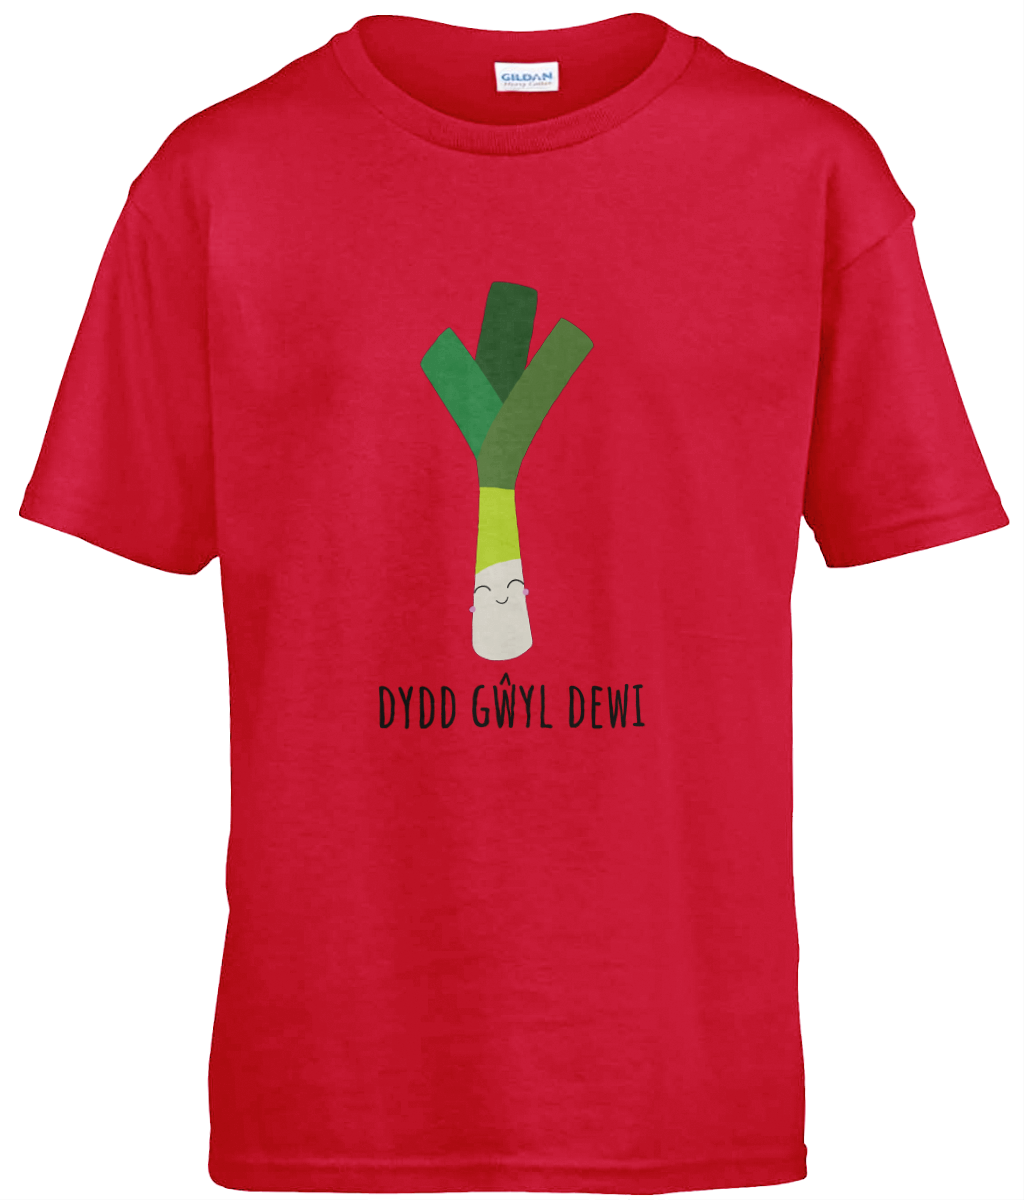 Dydd Gŵyl Dewi 'Ceni' Boys T-Shirt | Welsh Children's Clothes